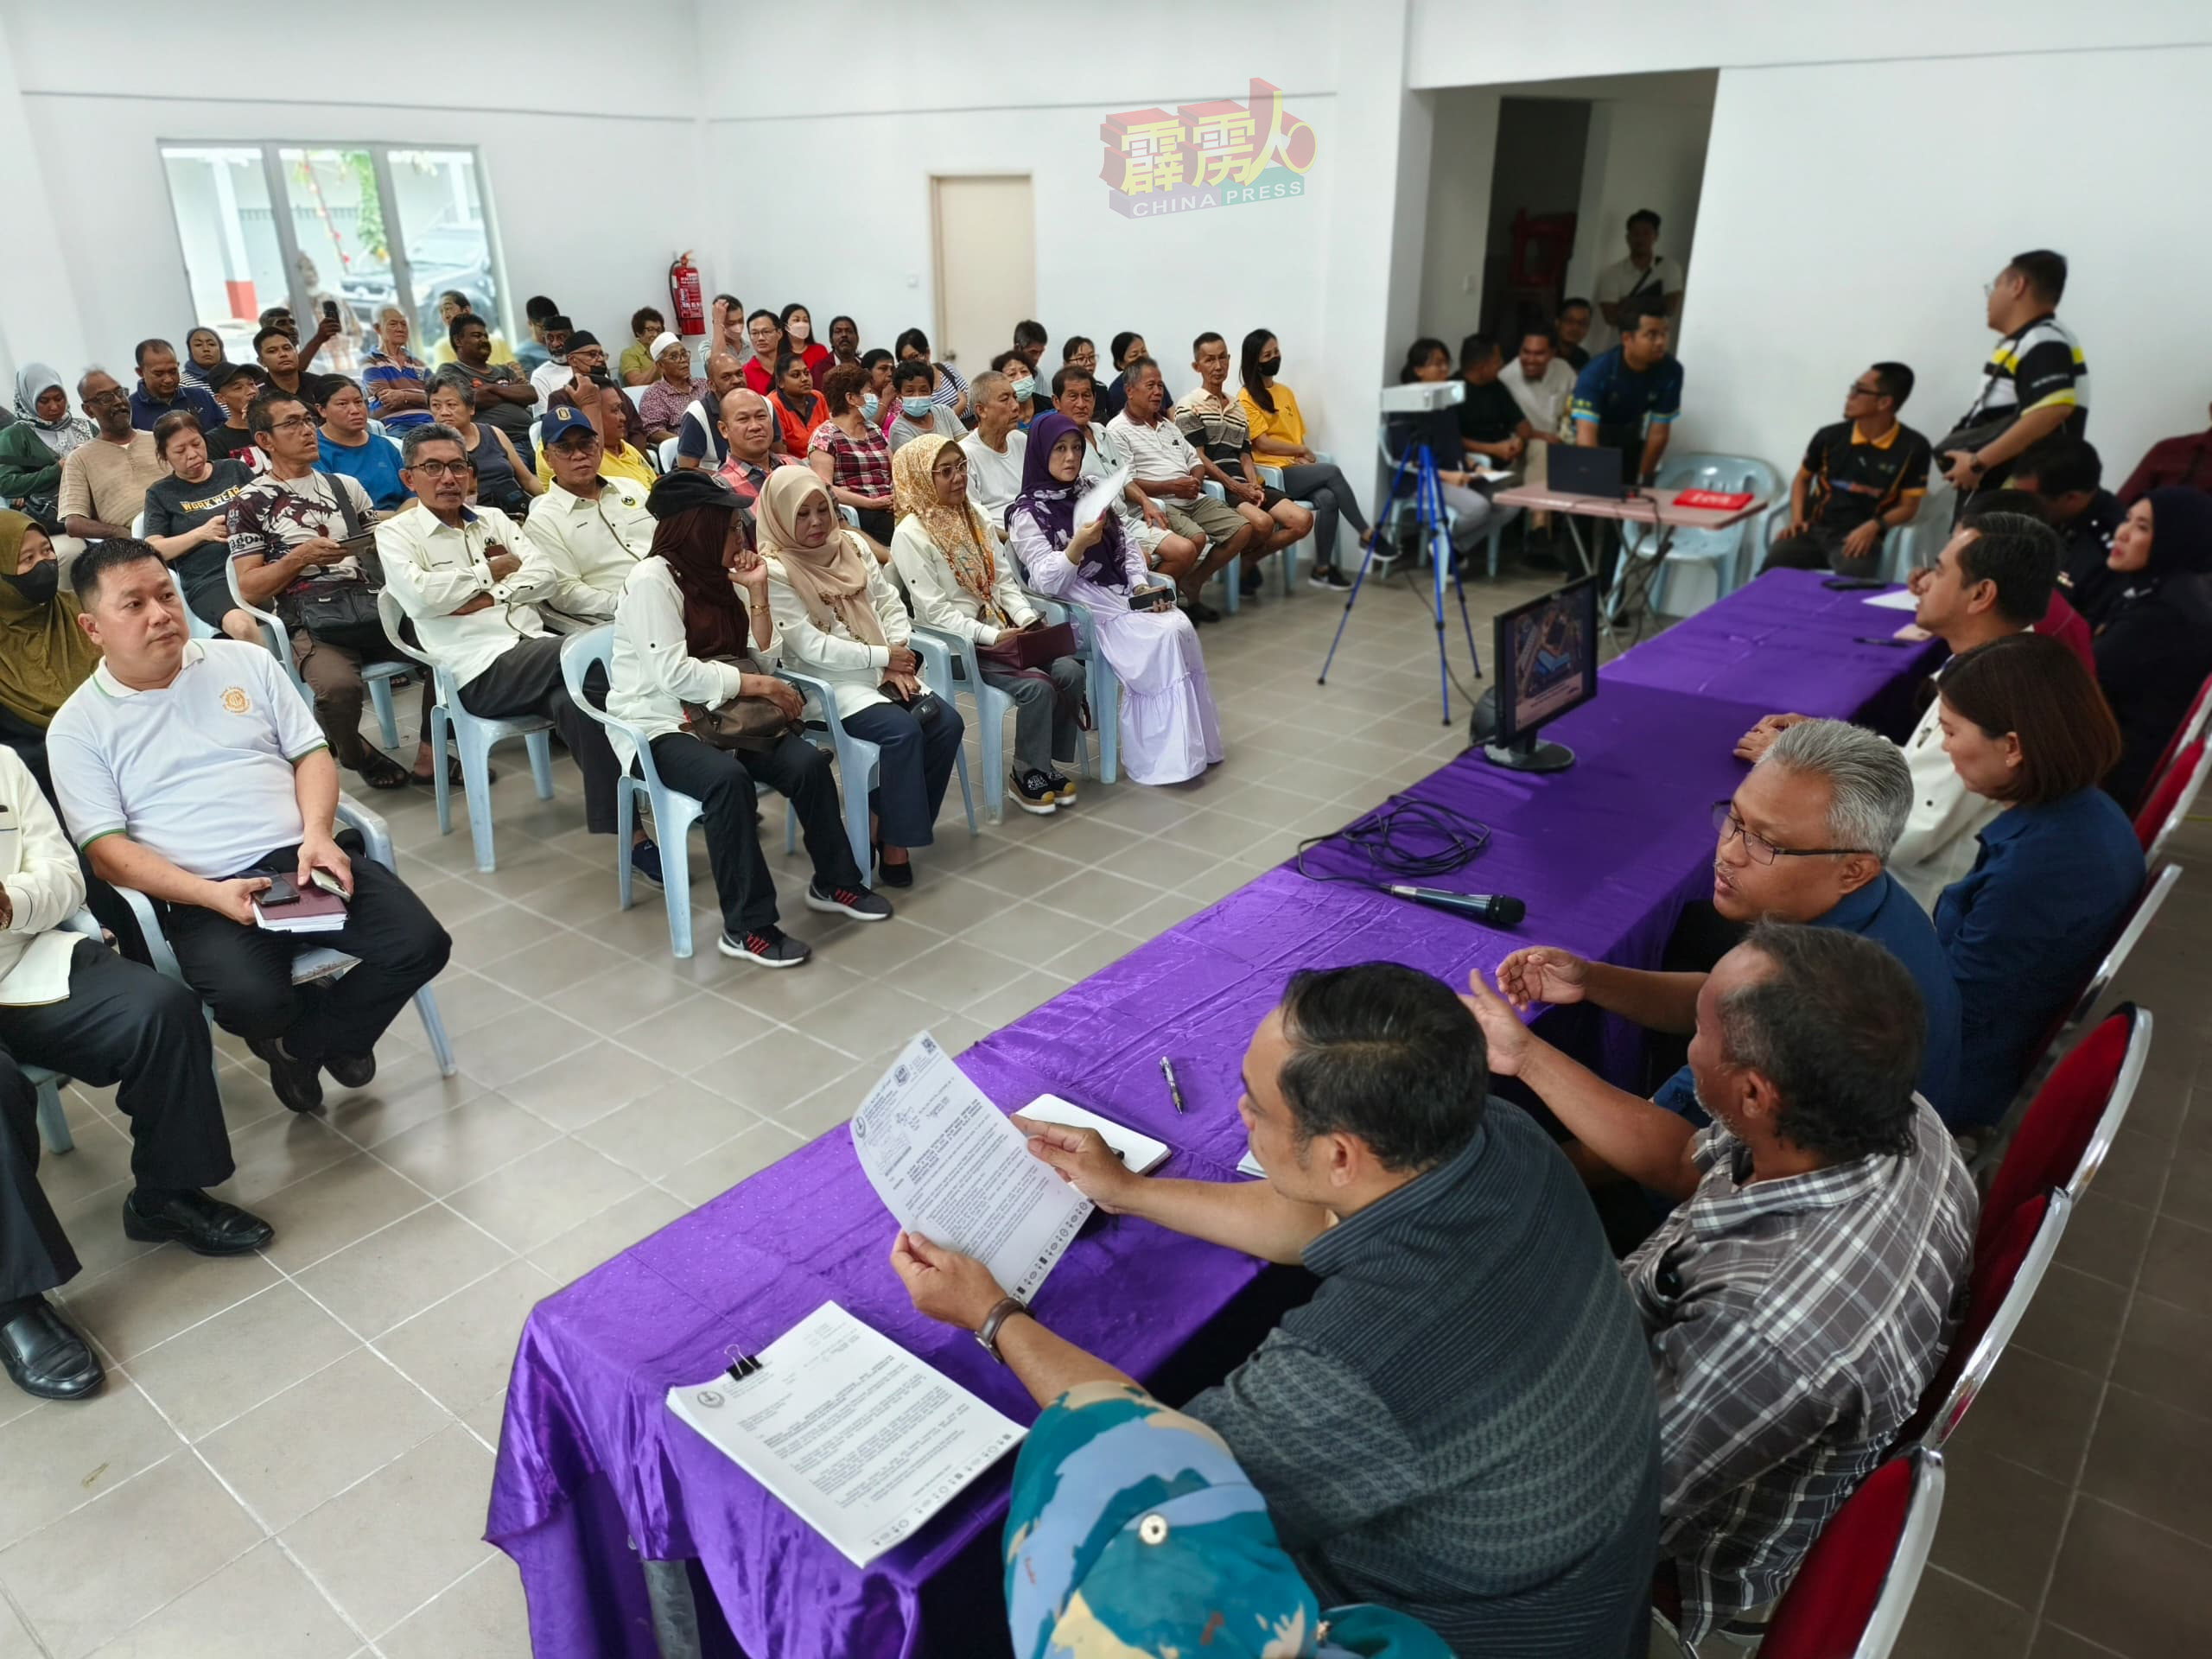 江沙巴刹业者于週五（22日），在新巴刹会客室与霹雳州政府、地方政府及霹州联邦农业销售局等单位代表展开对话。